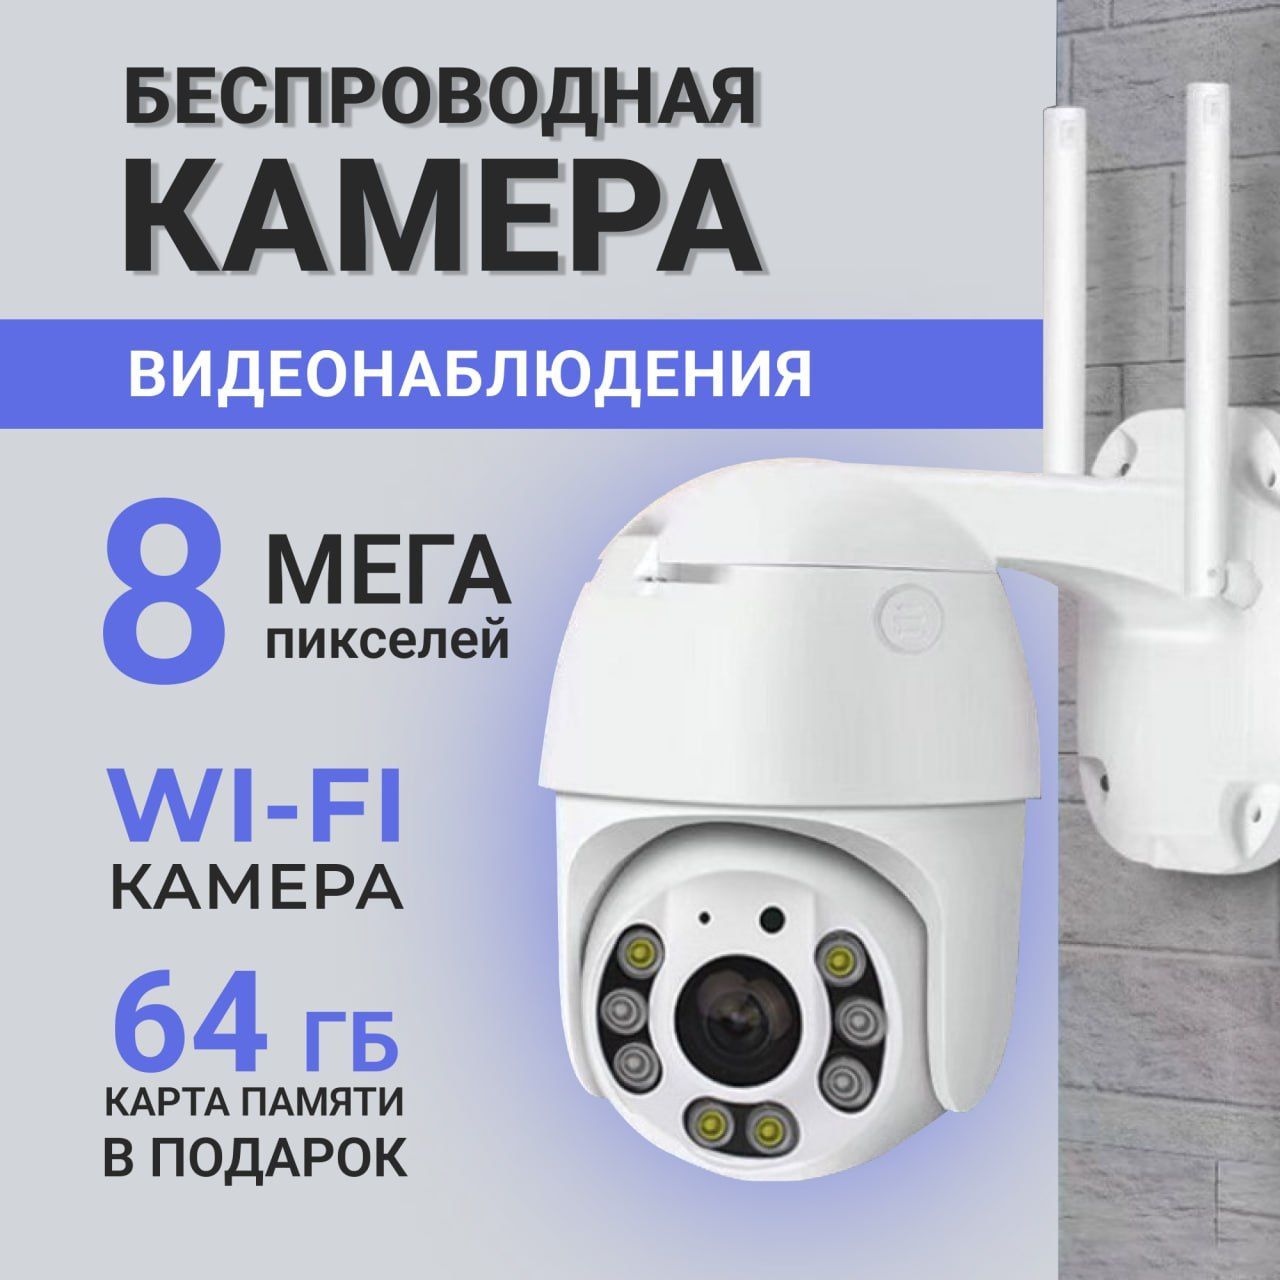 беспроводная камера видеонаблюдения zodikam 3155w уличная wi fi 5мп Камера видеонаблюдения wi-fi уличная поворотная 8 Мп